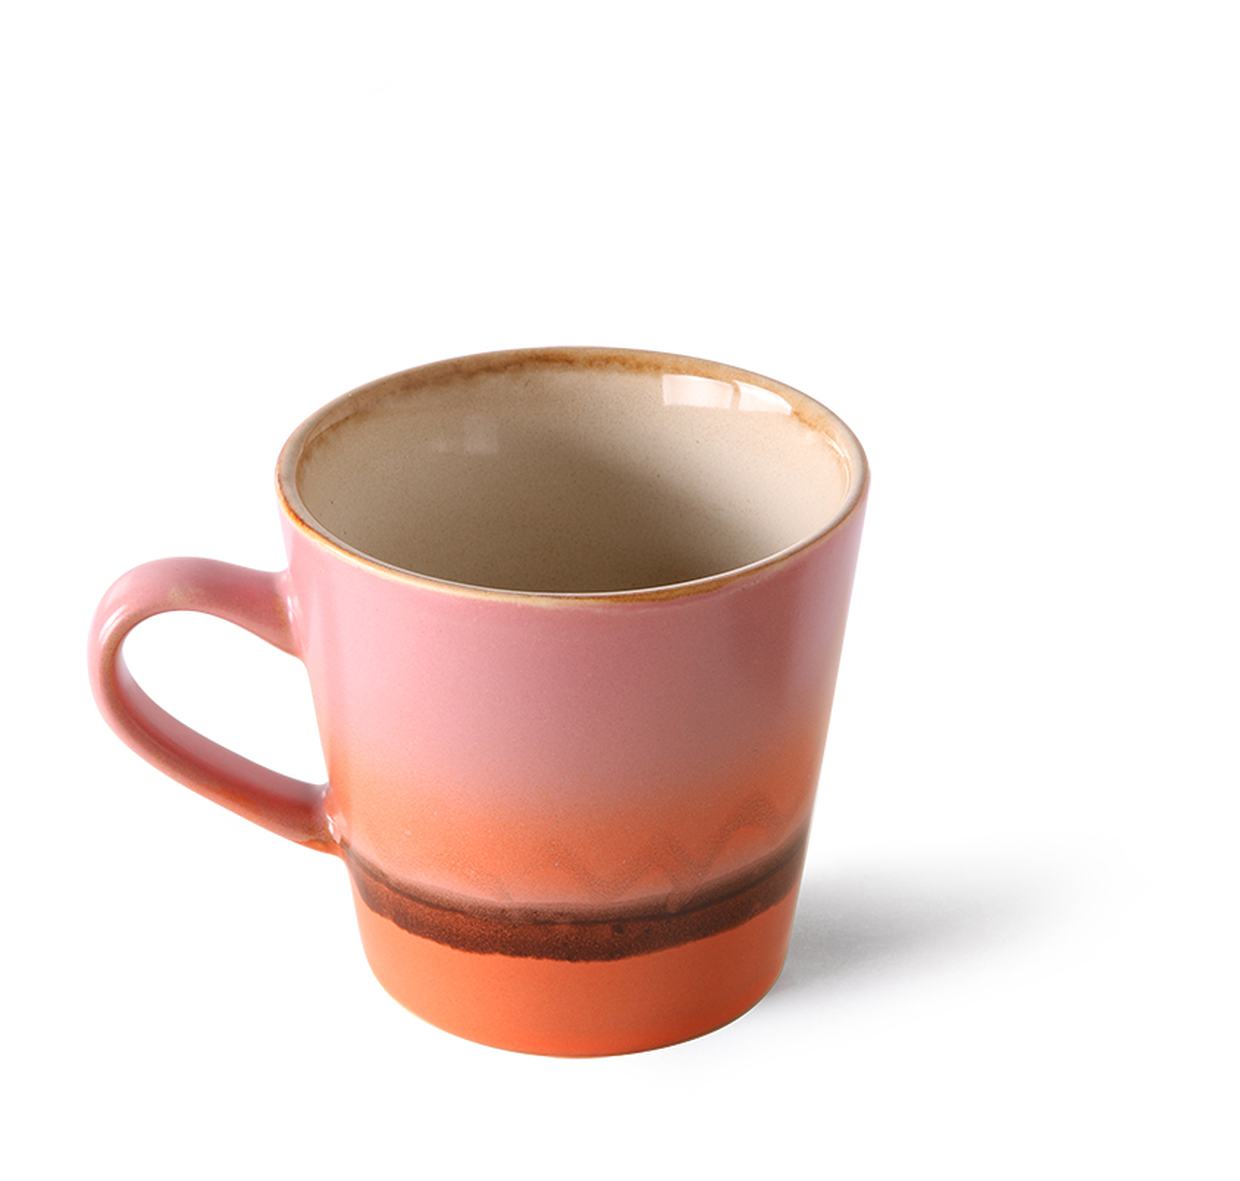 70s ceramics: americano mug, mars